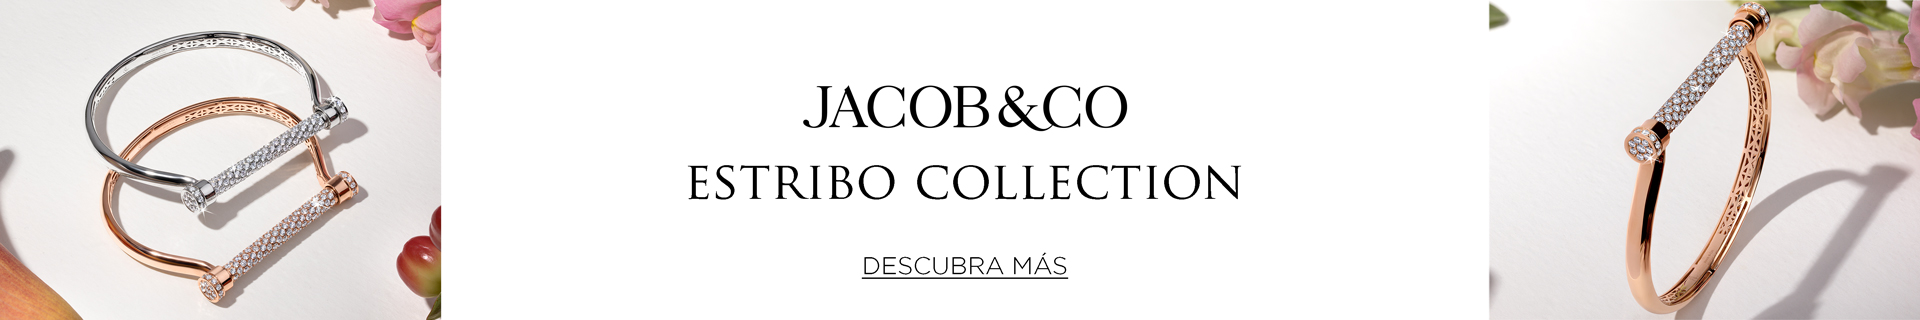 Descubra la colección Estribo de Jacob & Co. en EMWA.